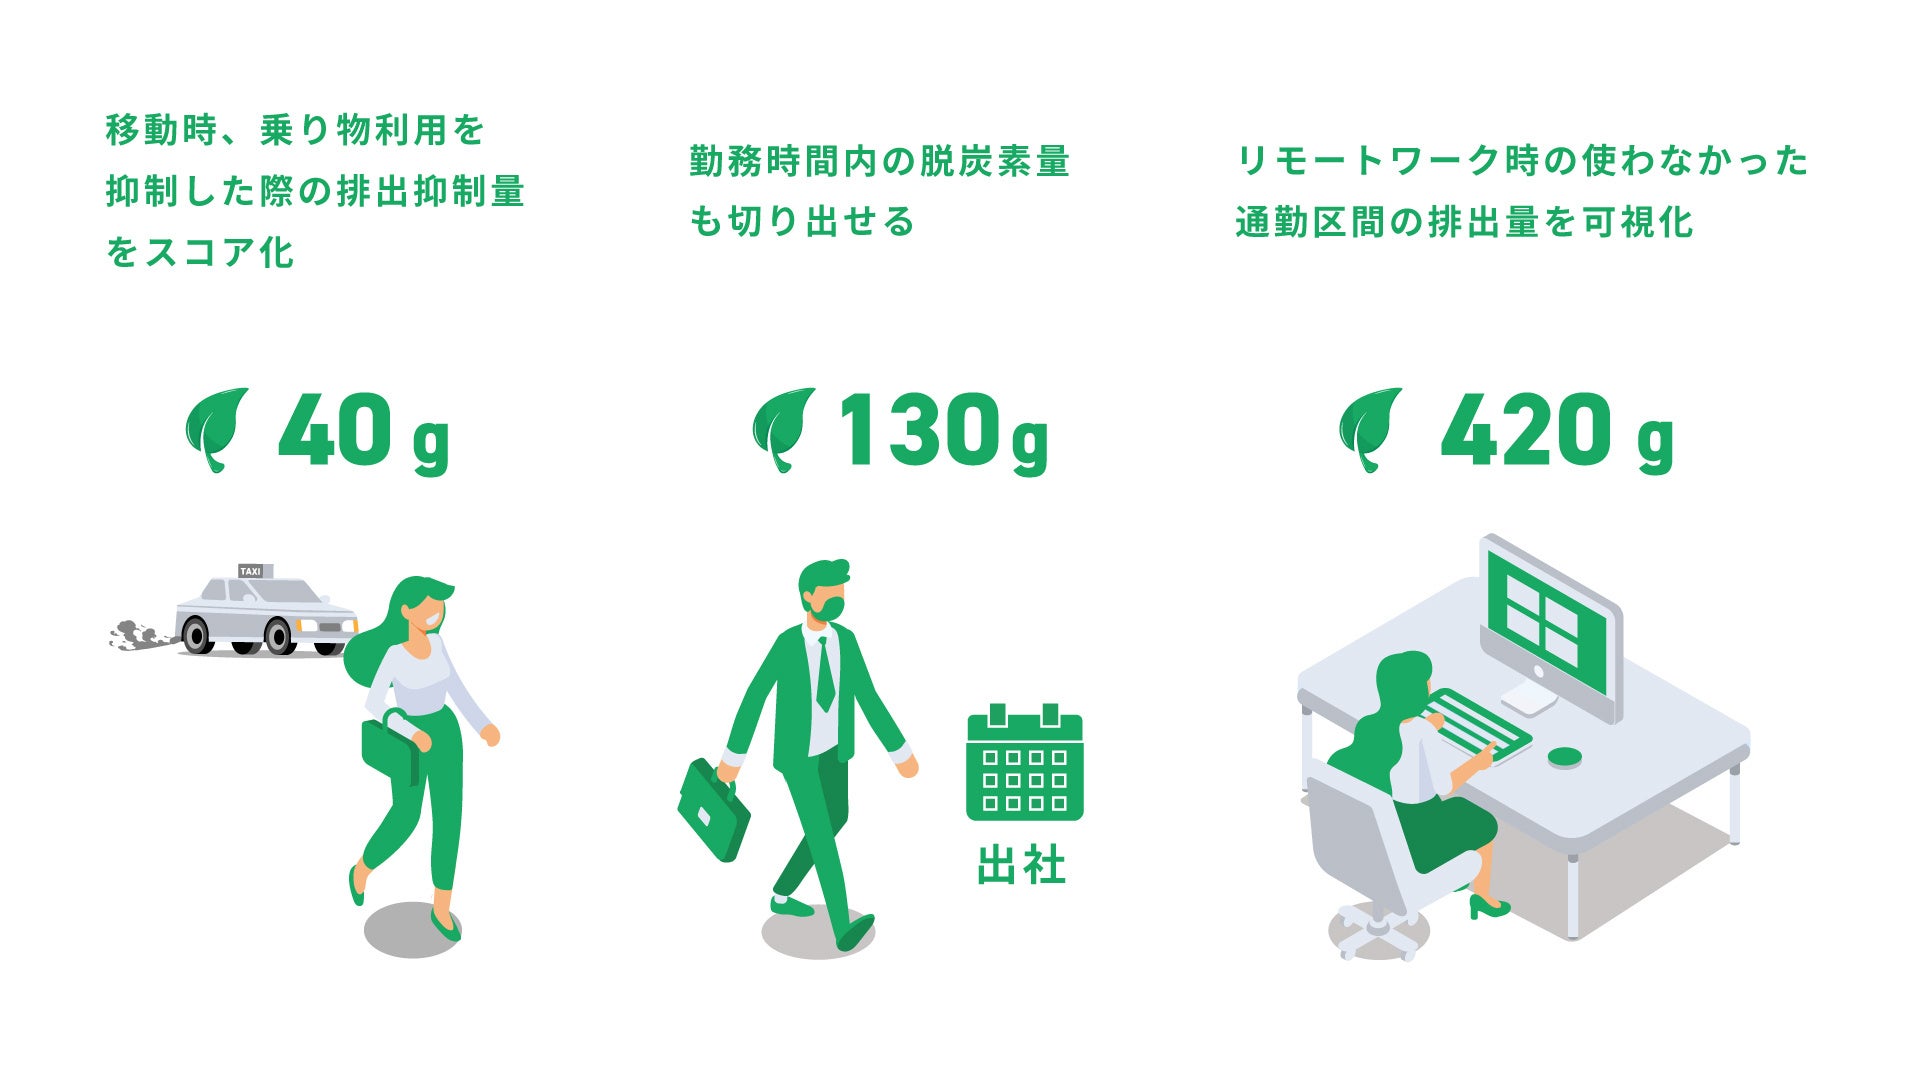 広島県安芸高田市 / スマホアプリ「SPOBY」で歩いて脱炭素、健康を促進。市民は豪華特典獲得のチャンス。/ 23年2月1日のサブ画像2